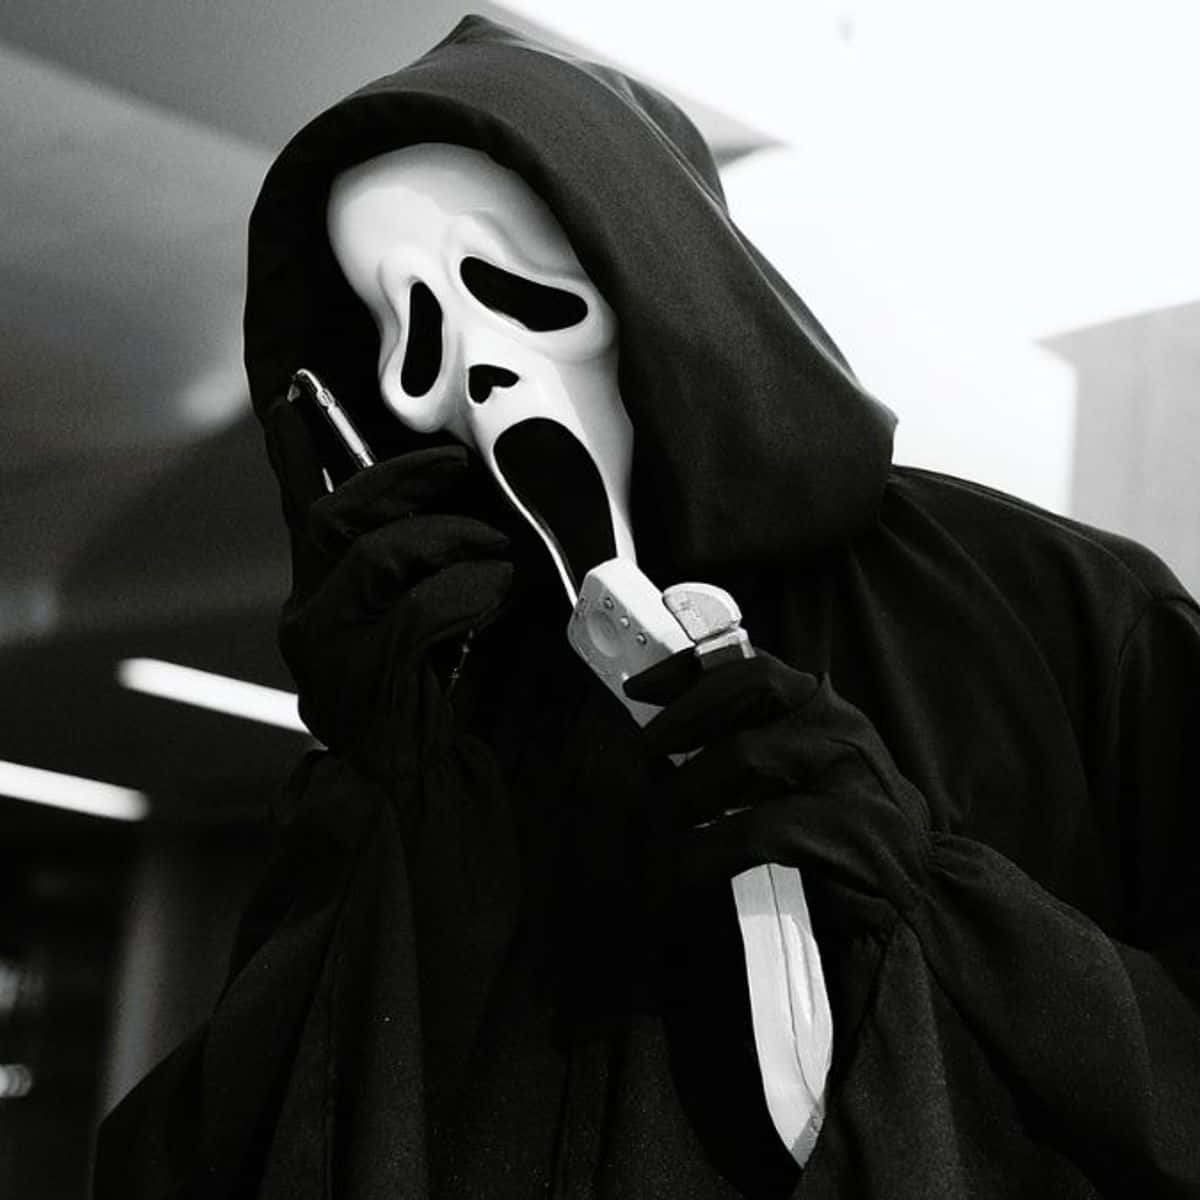 Dieikonische Ghostface-maske Aus Der Scream-filmreihe